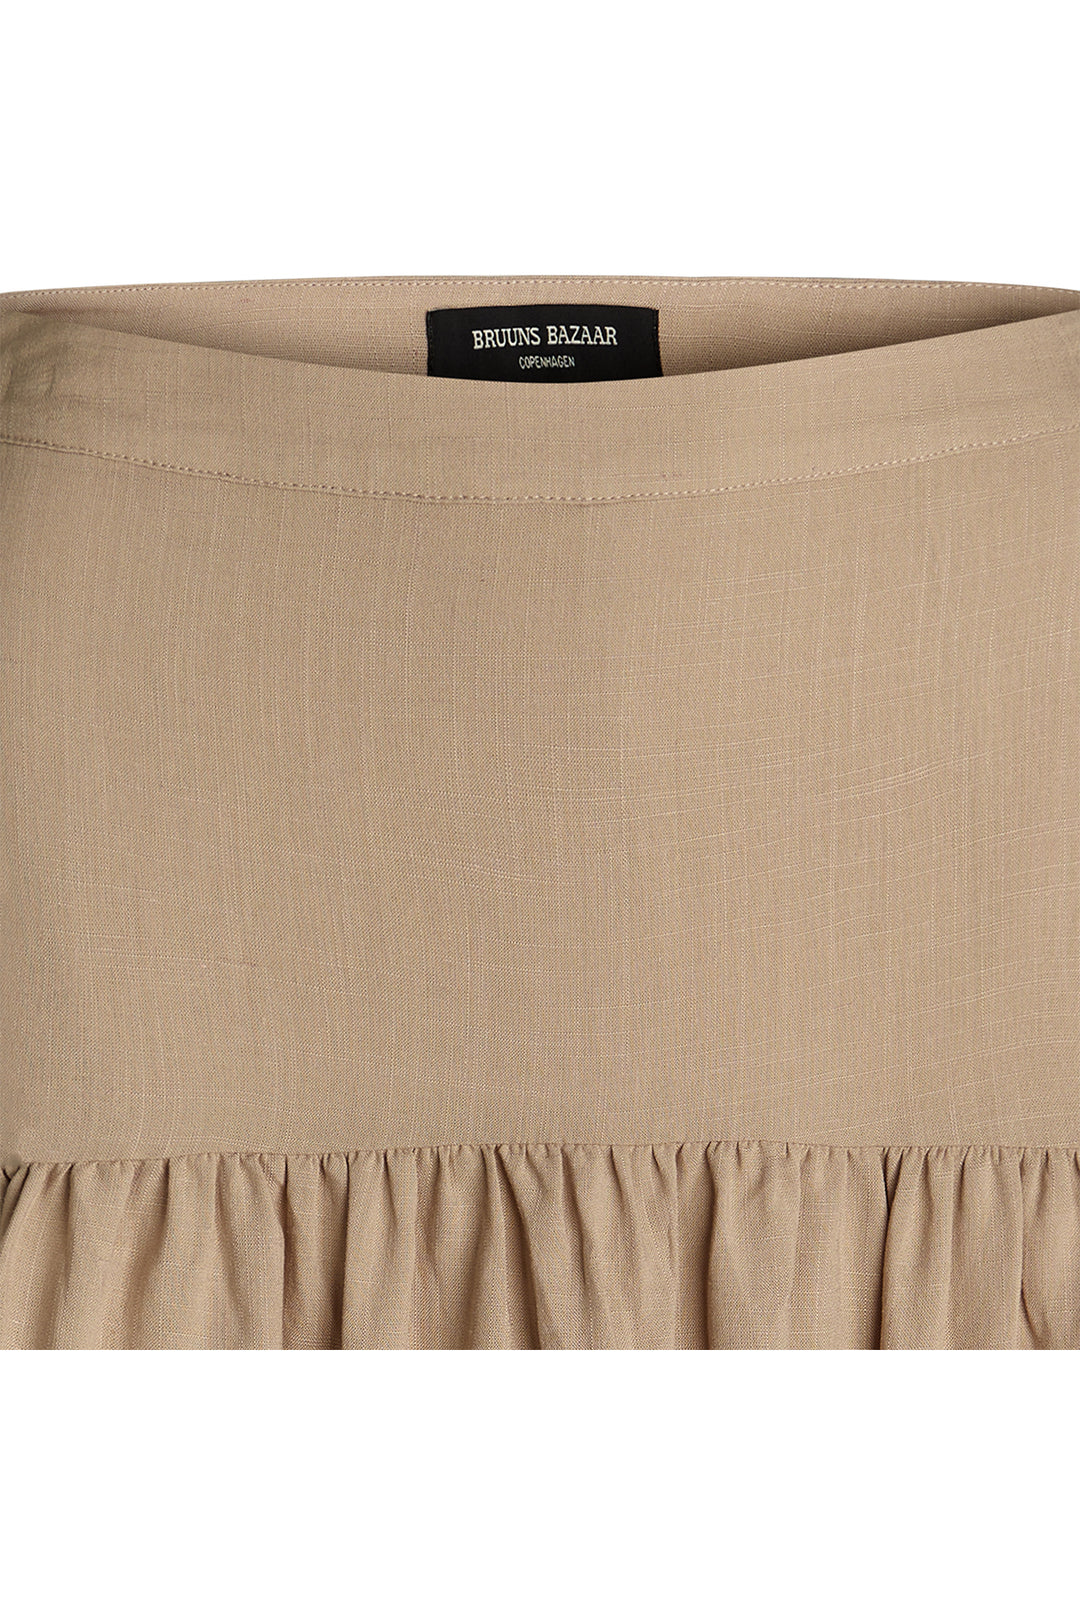 Bruuns Bazaar Women LavateraBBHarpa skirt Skirt .Sand